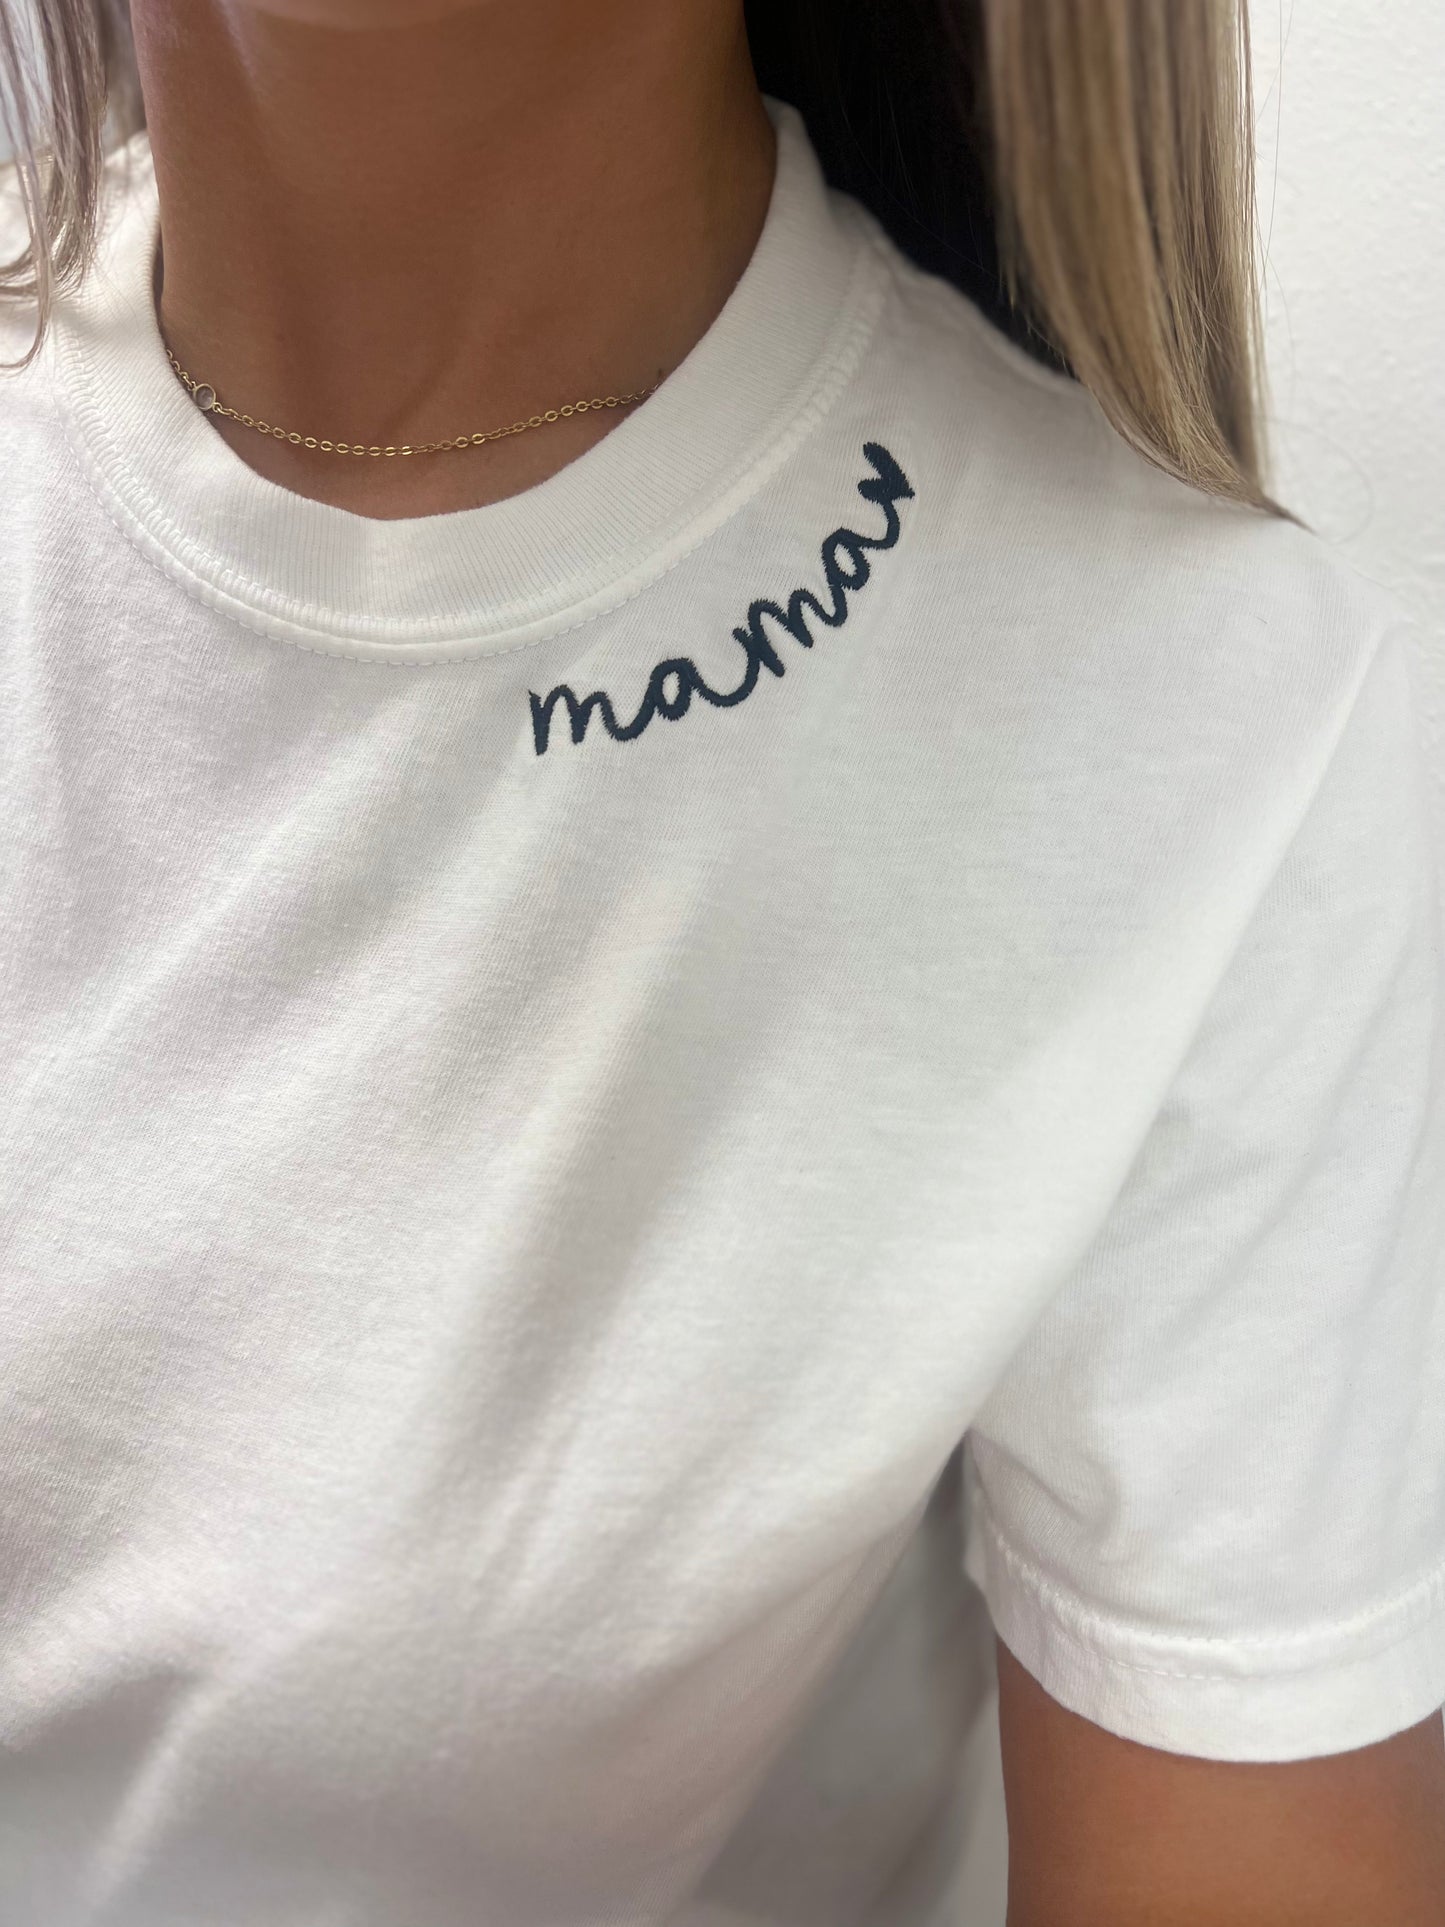 Mama Stitched Shirt